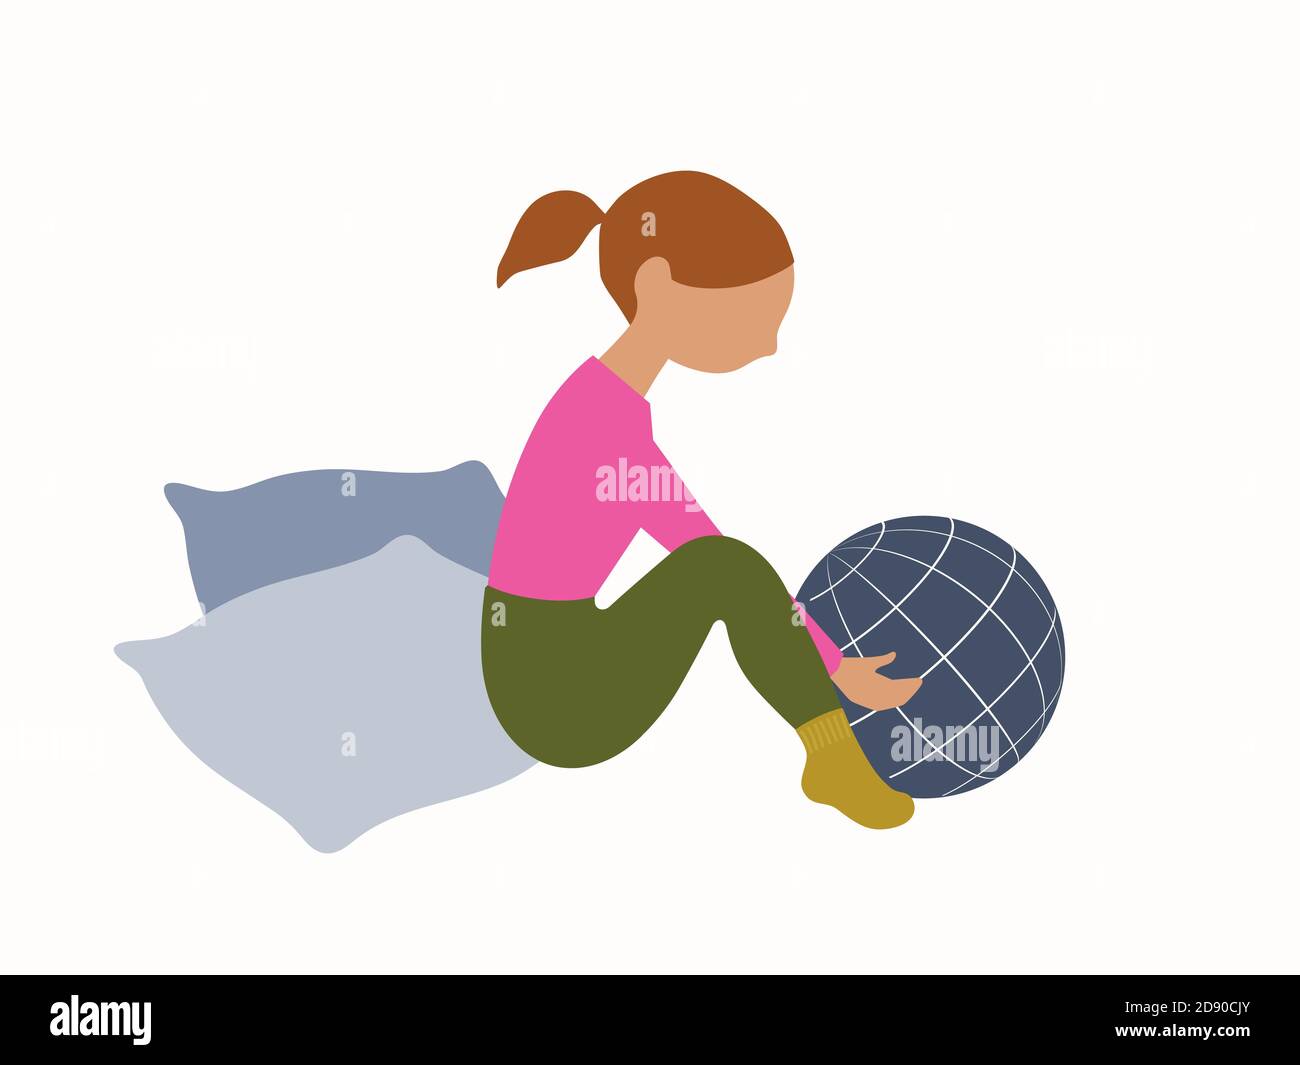 Kleines Mädchen sitzt und hält Globus / Planet Erde in Händen. Moderne flache Vektorgrafik. Stock Vektor